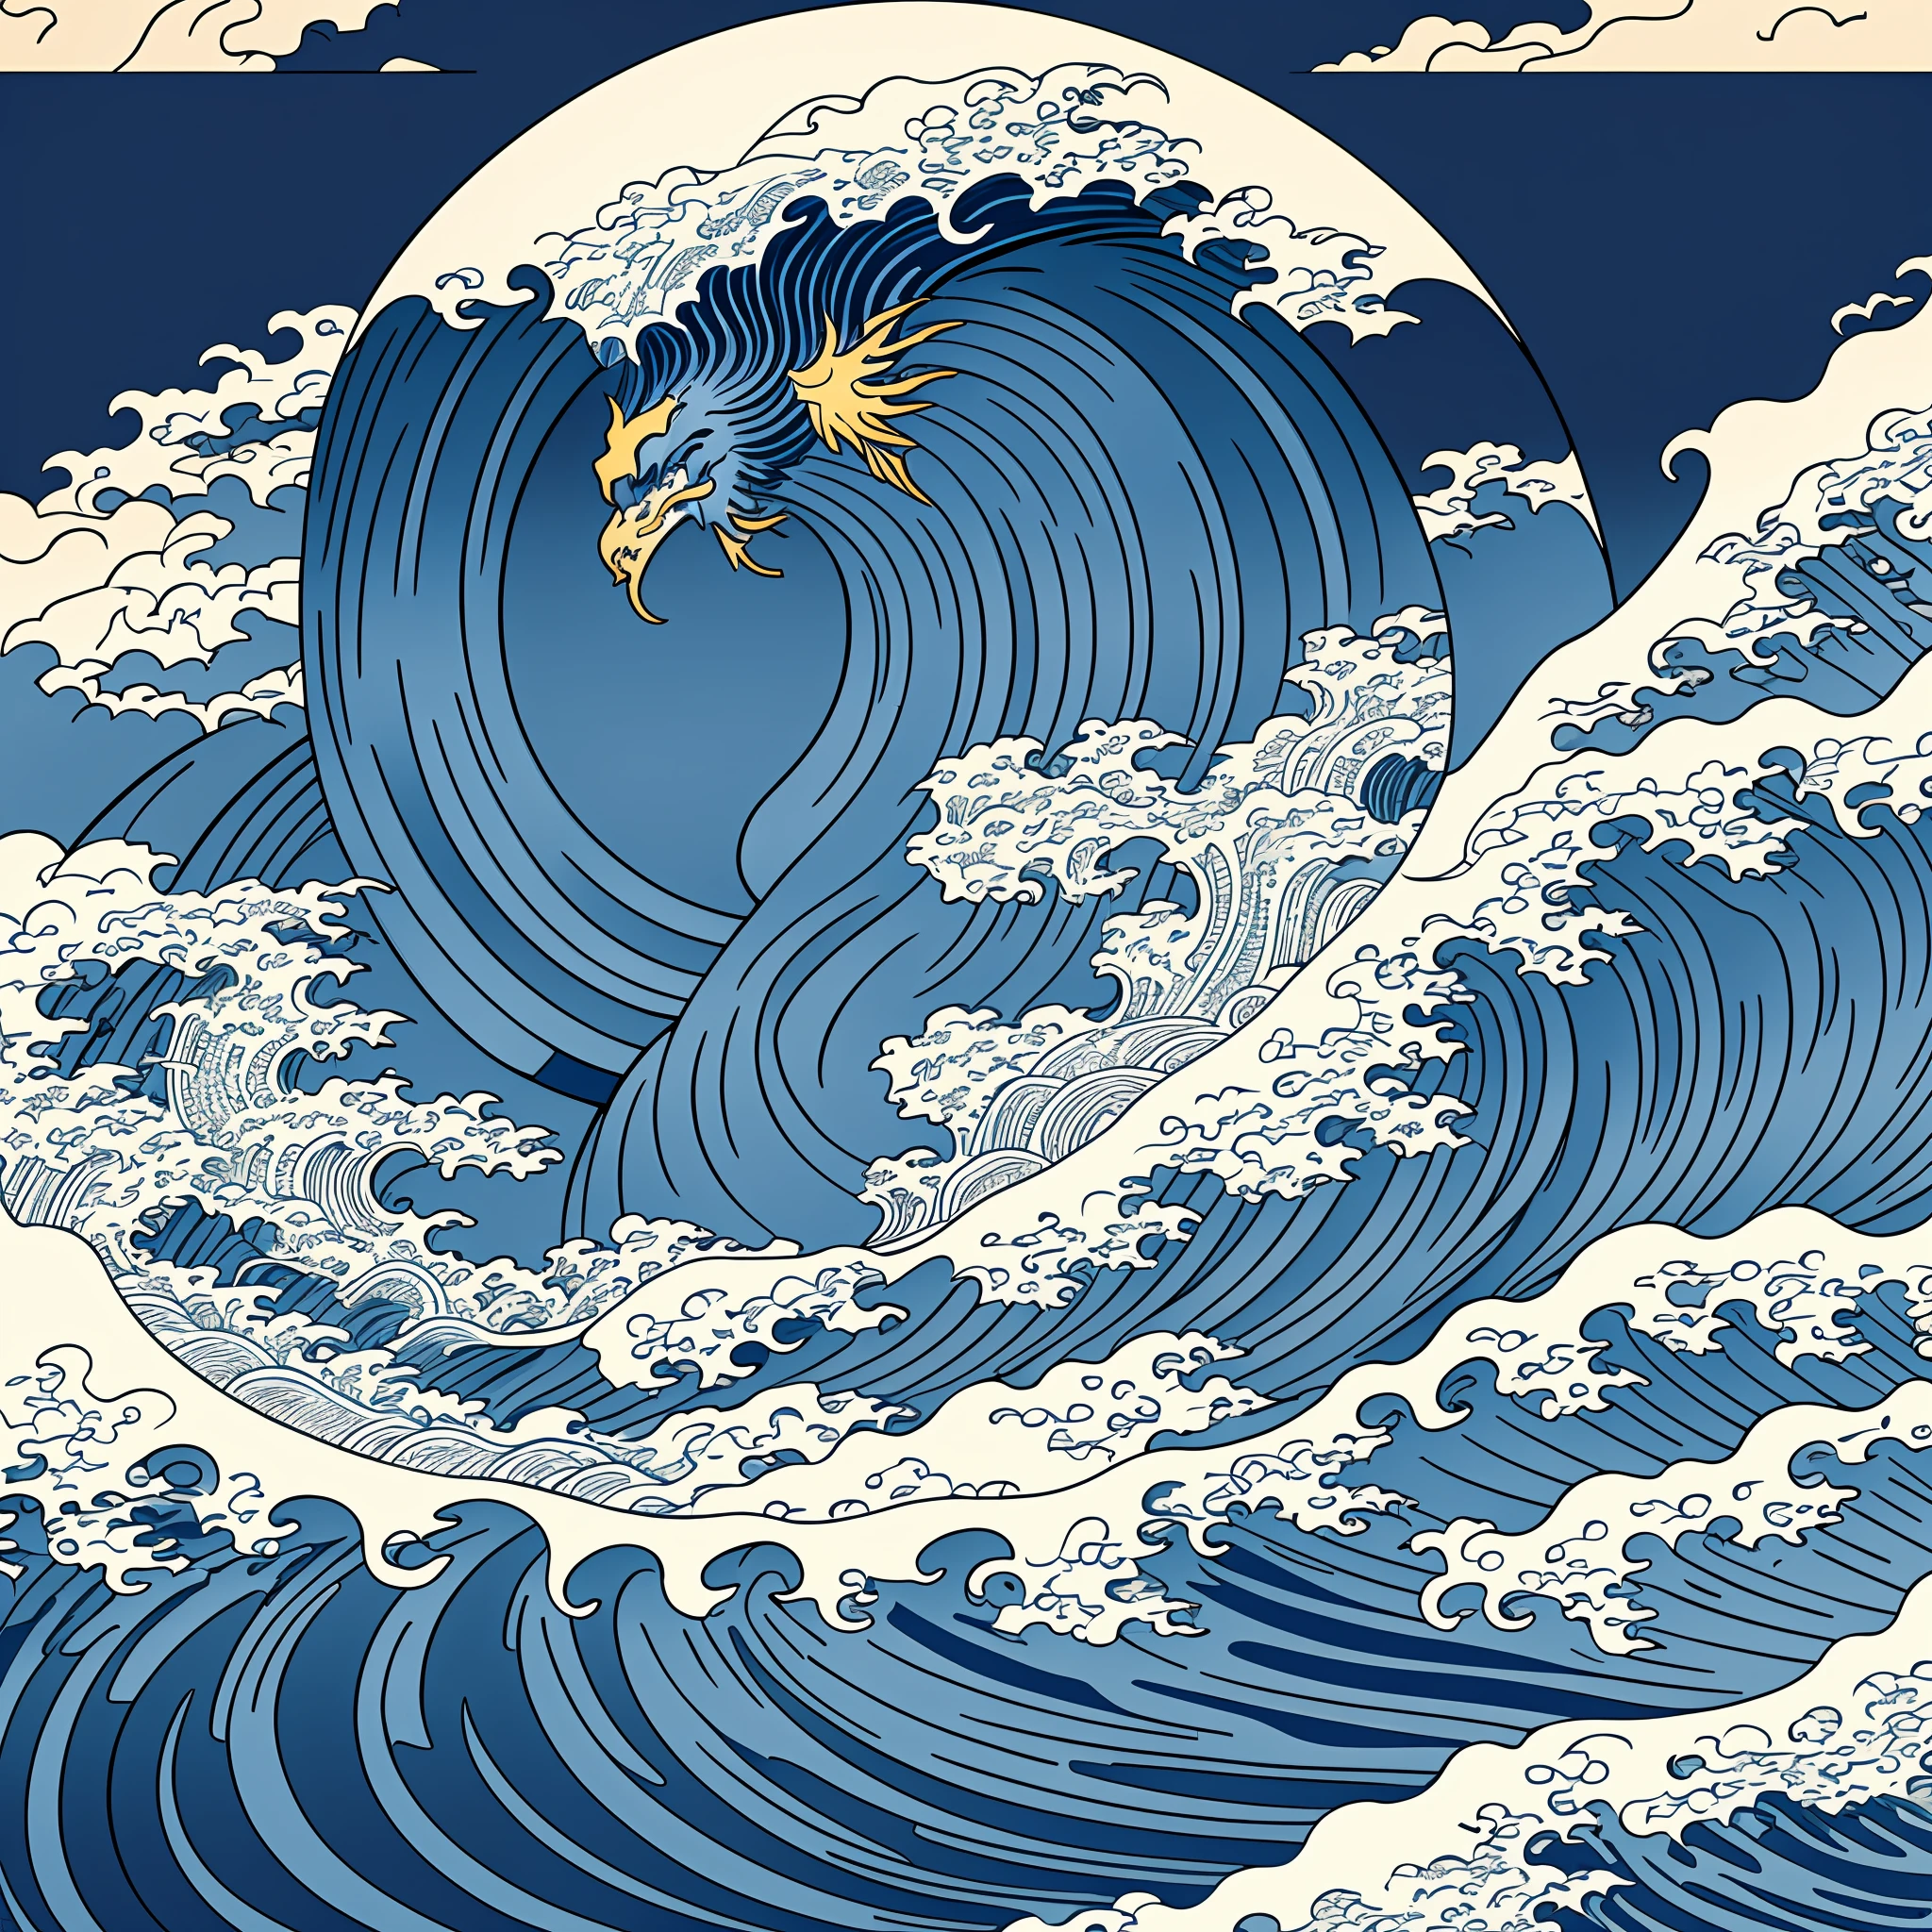 Strichzeichnungen im Katsushika-Hokusai-Stil, Grobes Wellenmuster im dunkelblauen Hokusai-Stil. Die Spitze der Welle ist der Kopf eines Drachen, die höchste Qualität, masterpiece high resolution Ukiyo-e-Stil. künstlerischer Stil, 1:1, Ukiyo-e-Stil, 3D-Vektorgrafiken, Adobe Illustrator, 4K-Auflösung, wunderschöne Hintergründe nur